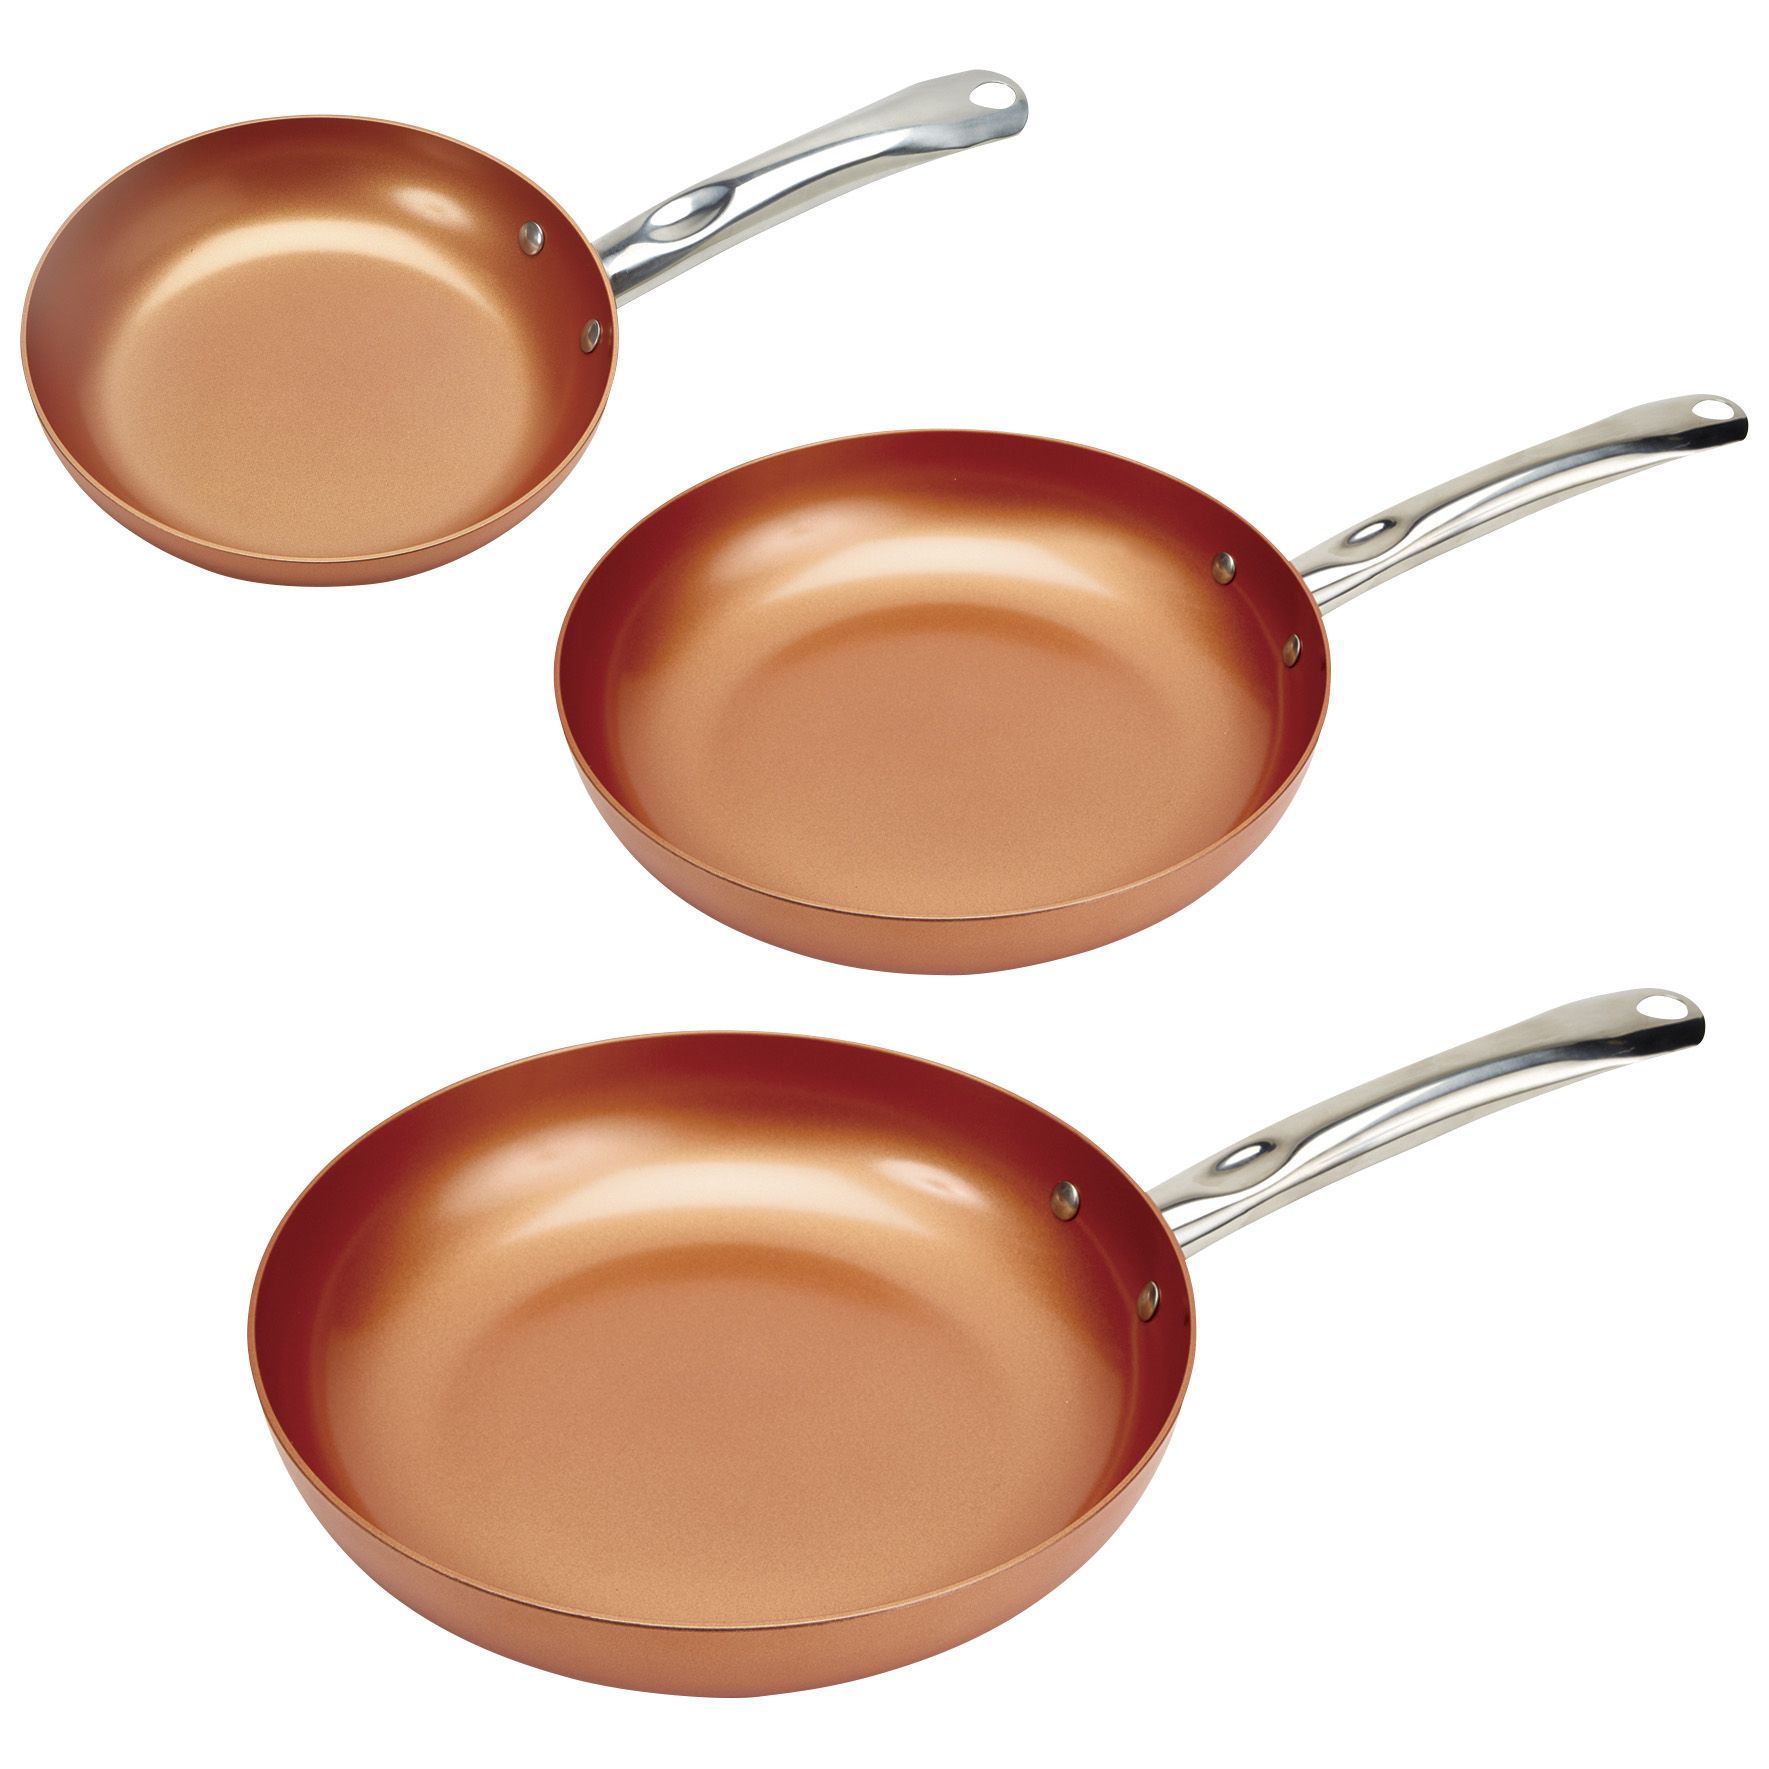 Copper Chef Cerami-Tech Non-Stick Copper 12 Skillet 